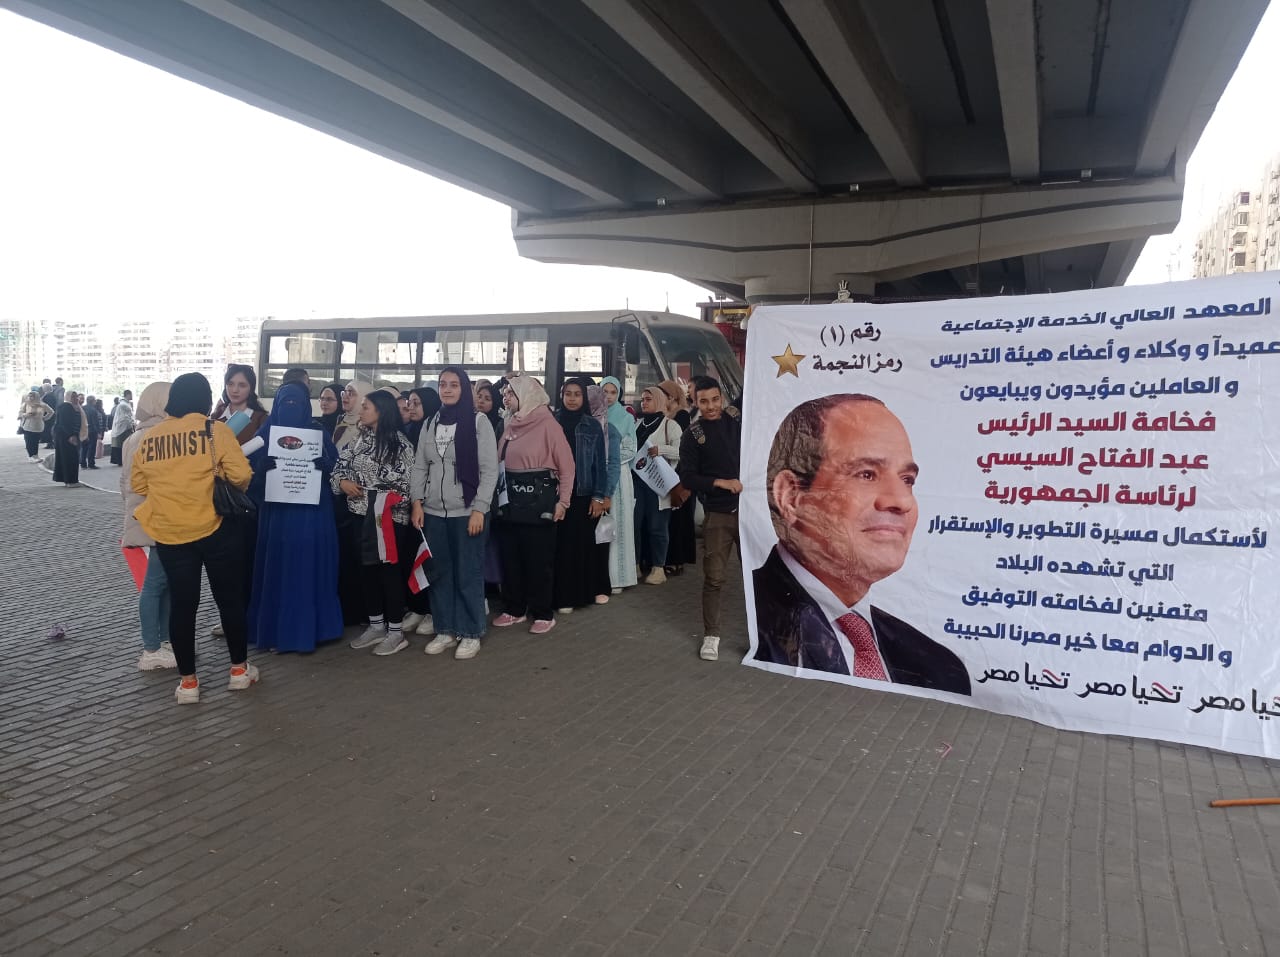 هيئة تدريس معهد خدمة اجتماعية بالقاهرة يرفعون لافتة دعم السيسي